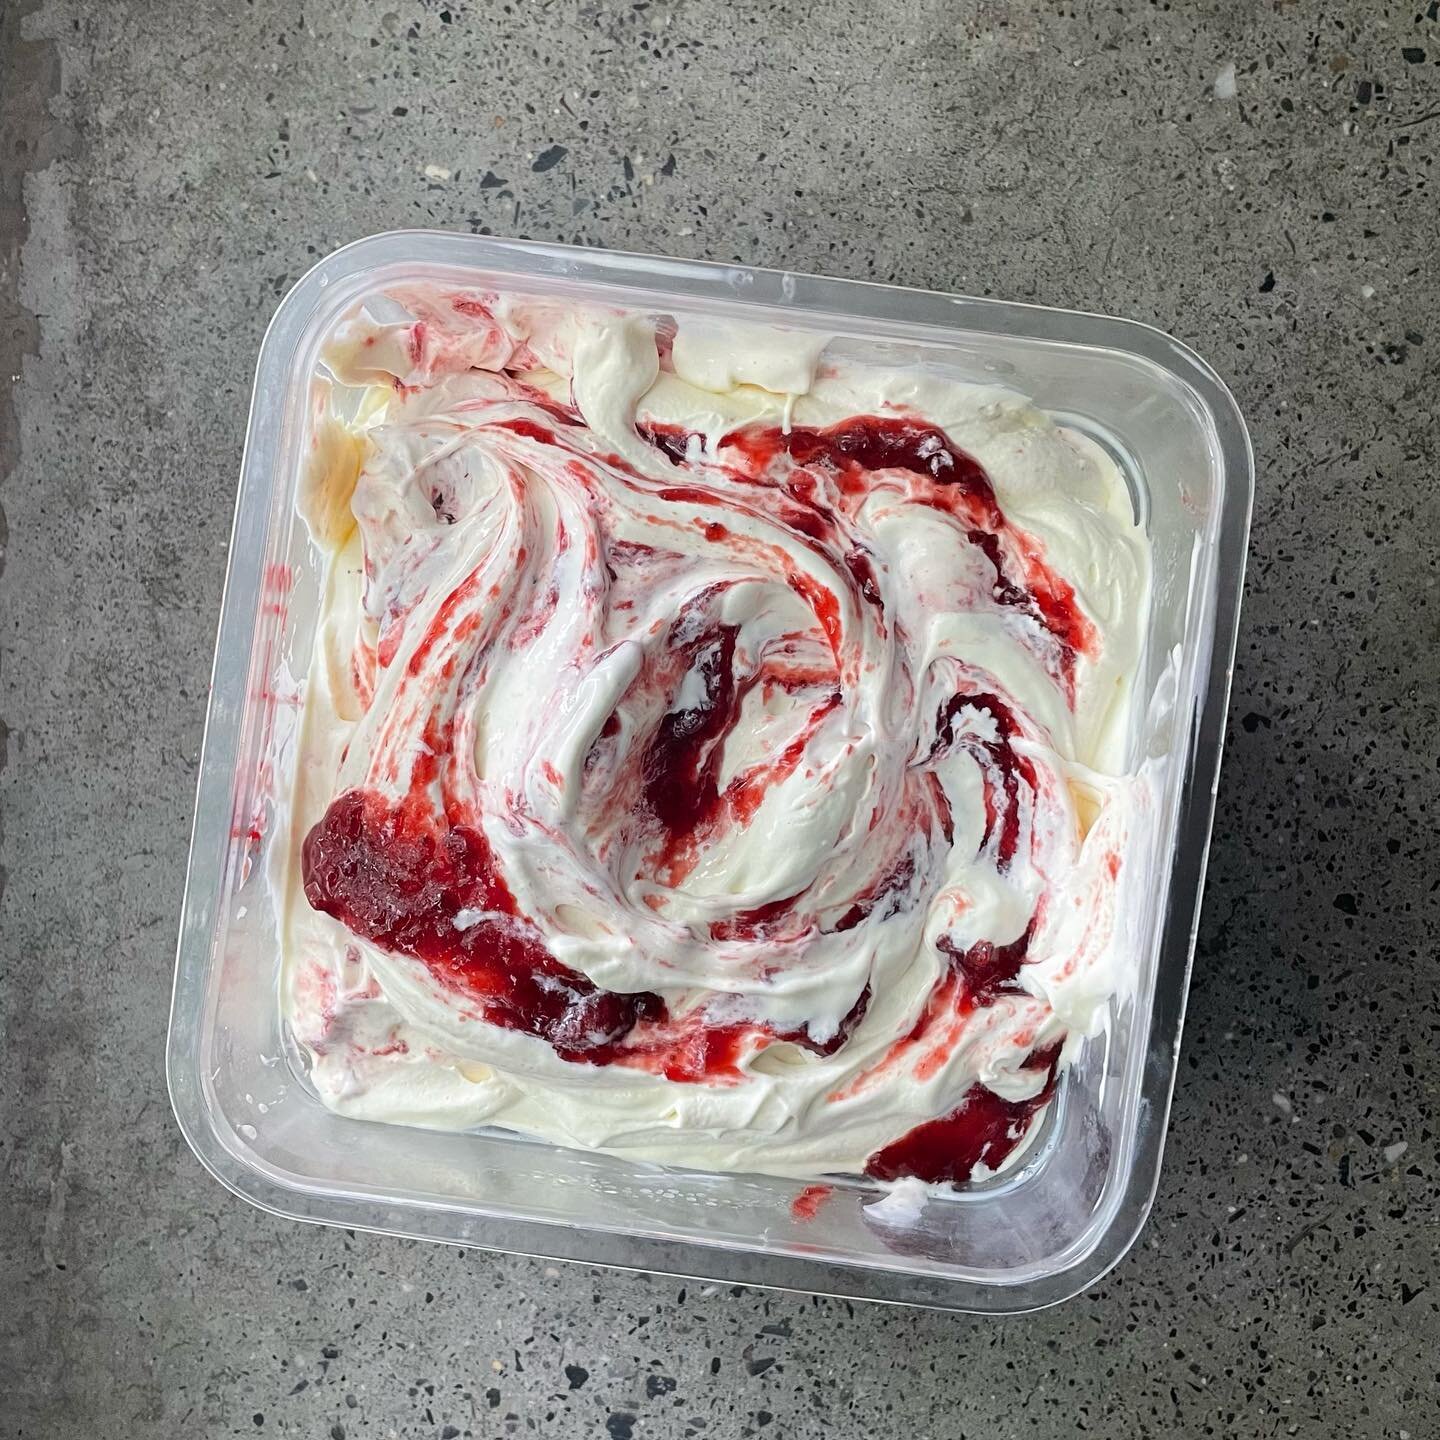 Strawberries &amp; Cream 🍓
Milk Ice Cream with Swirls of Fresh Strawberry Jam